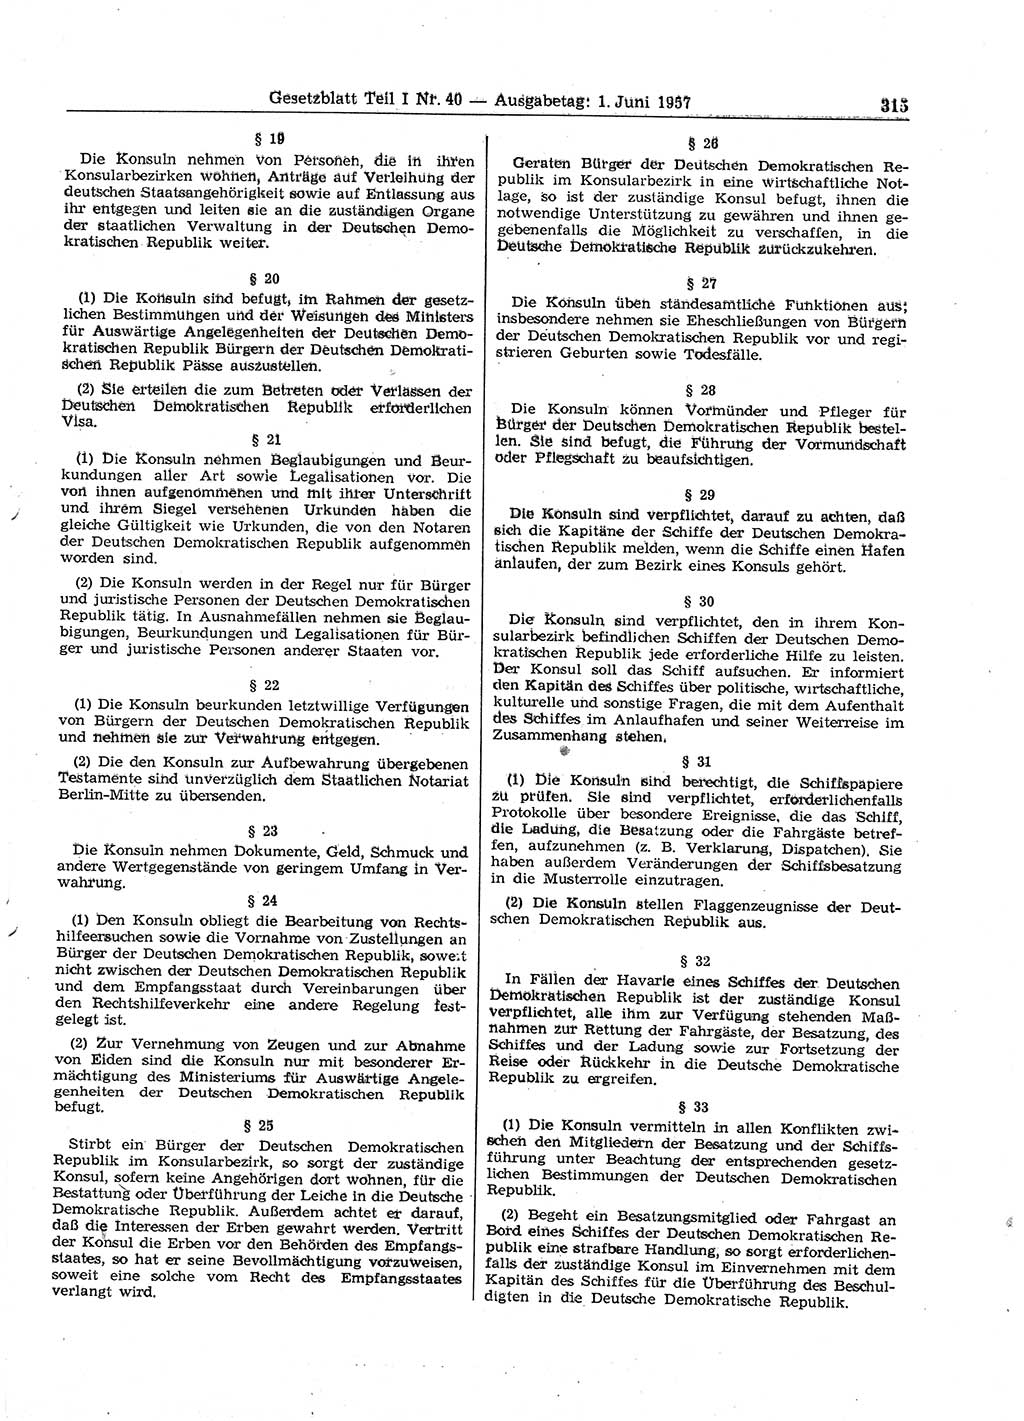 Gesetzblatt (GBl.) der Deutschen Demokratischen Republik (DDR) Teil Ⅰ 1957, Seite 315 (GBl. DDR Ⅰ 1957, S. 315)